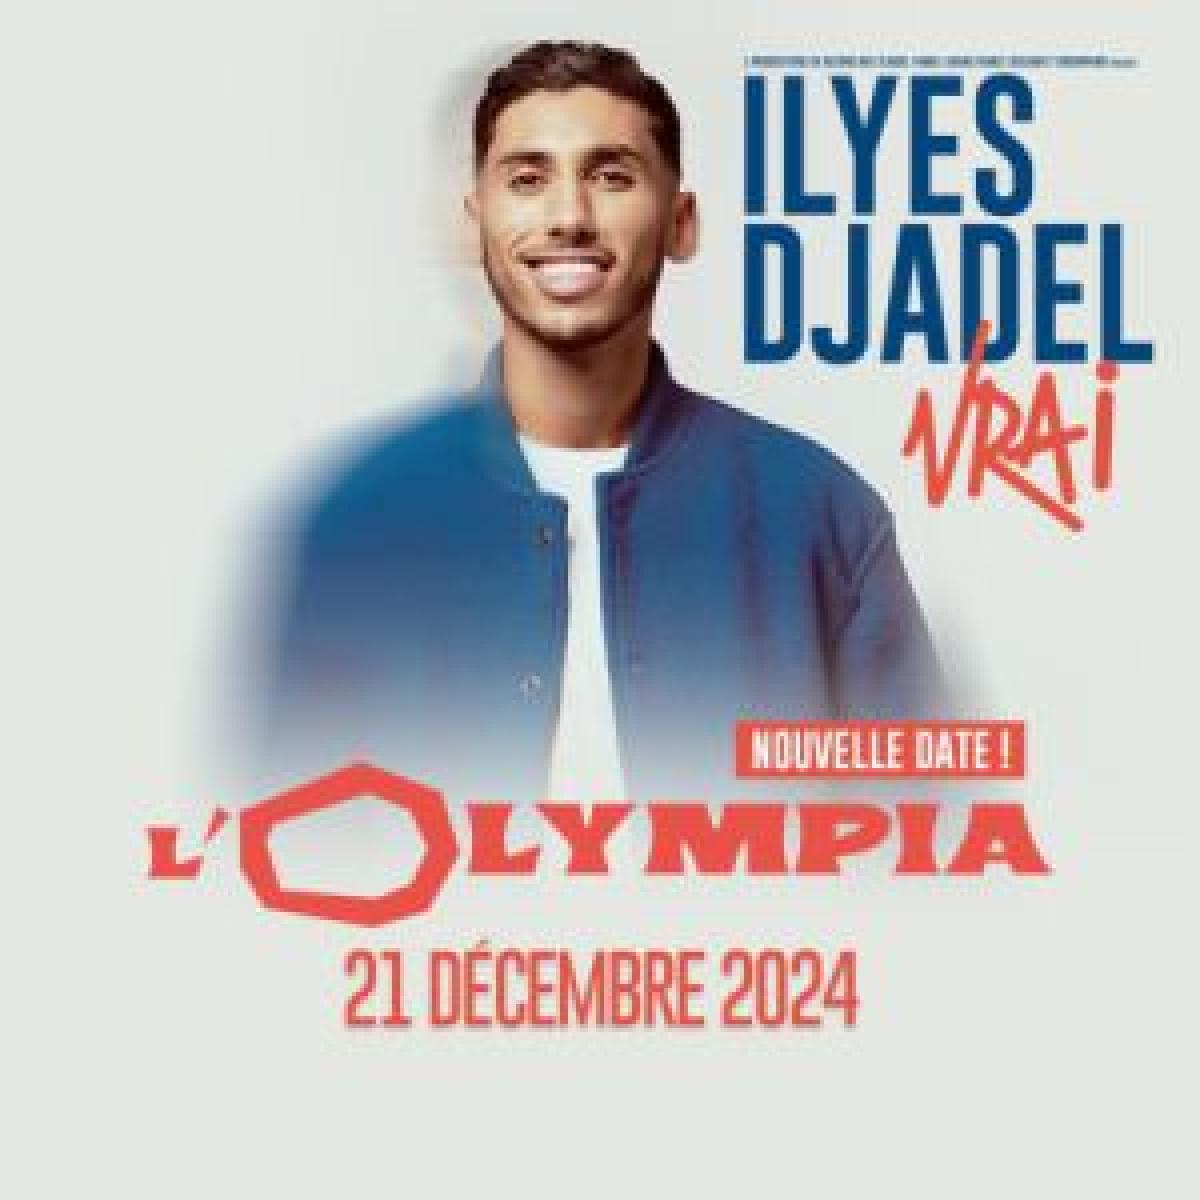 Ilyes Djadel at Olympia Tickets